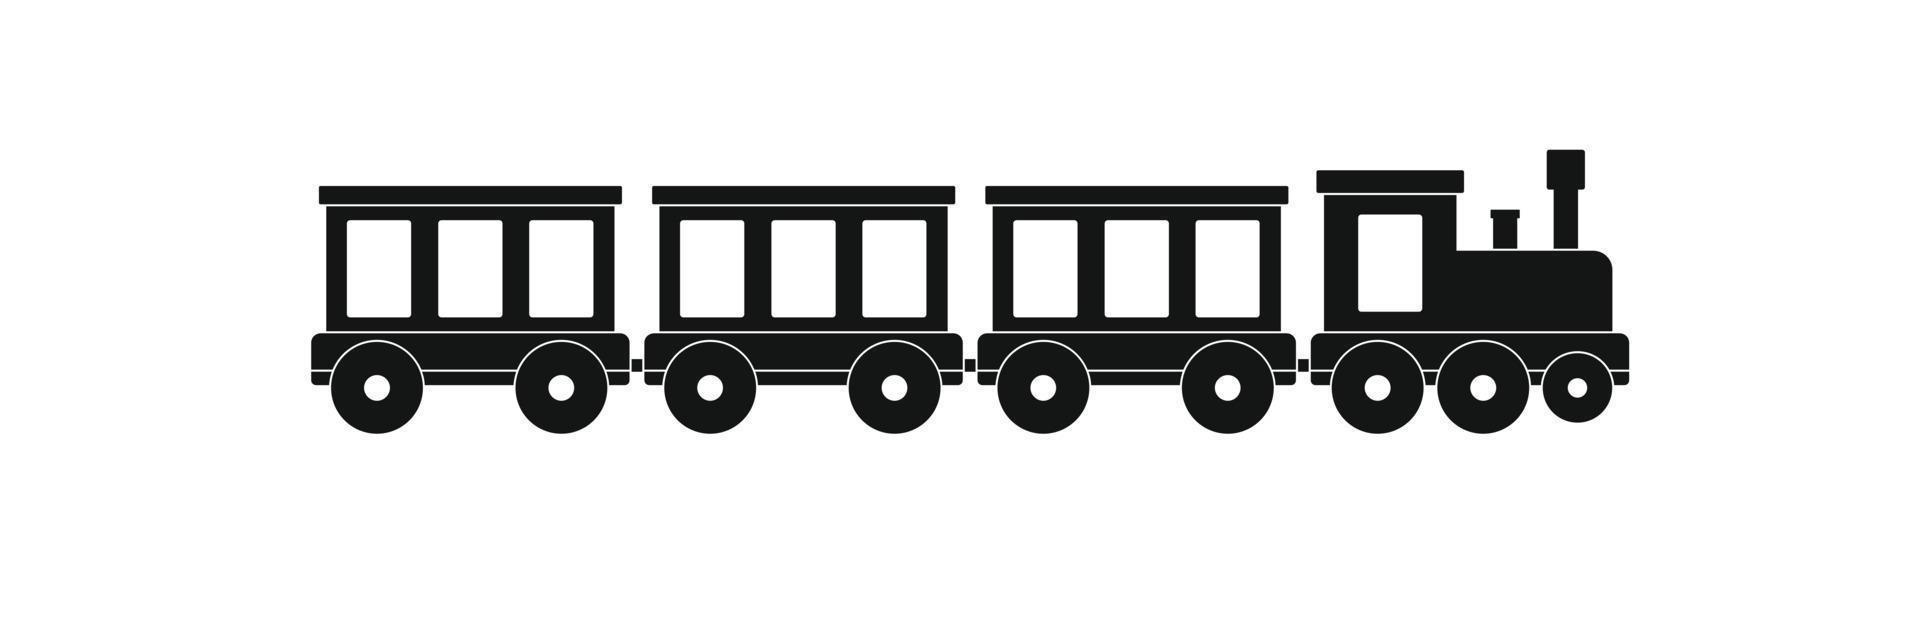 icono de tren de pasajeros, estilo simple. vector